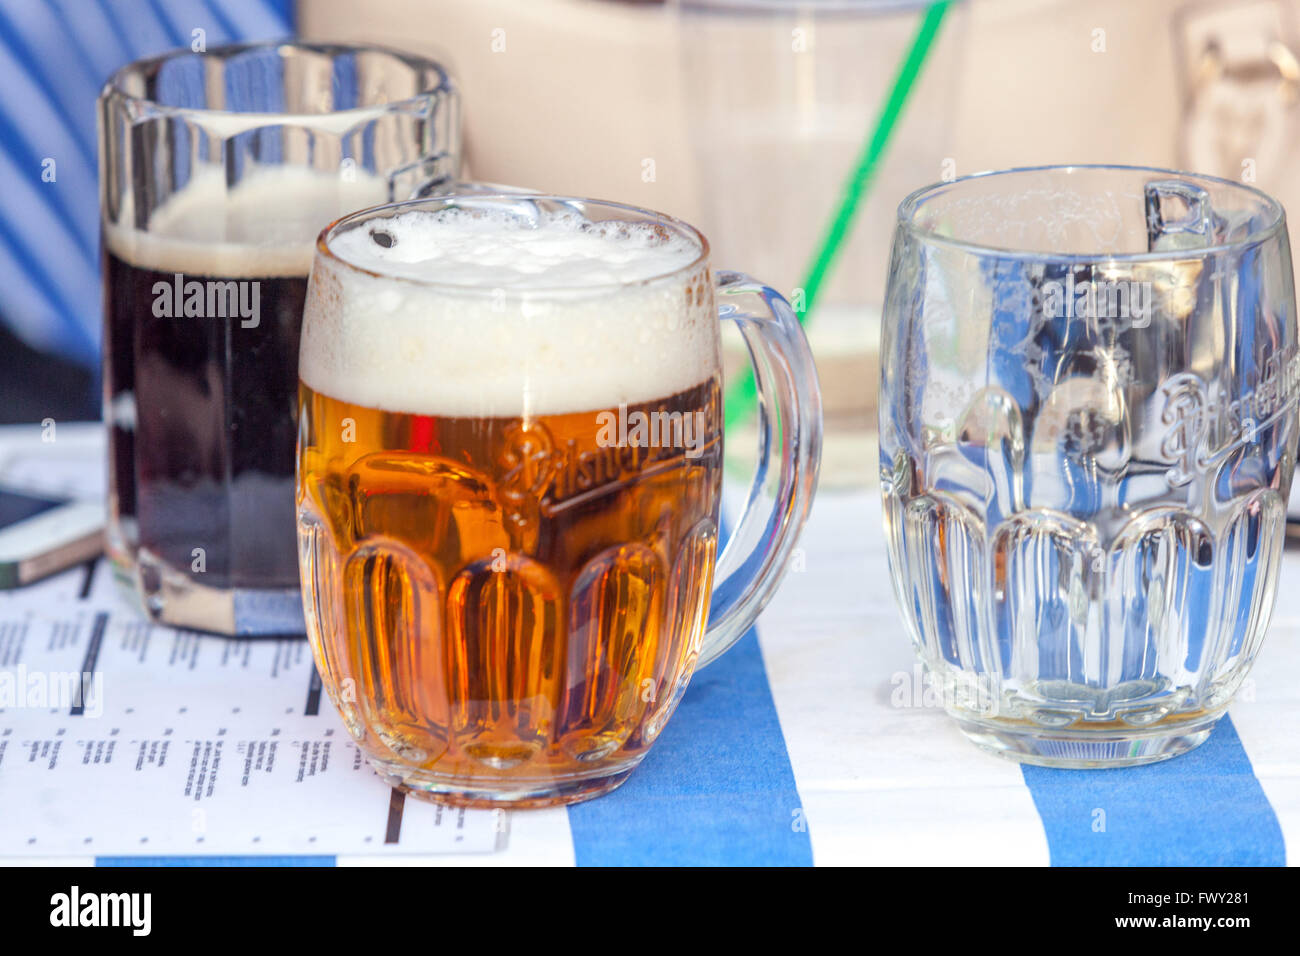 Glass of Czech beer Pilsner Urquell beer in original glasses on a desk, Prague bar, Czech Republic Stock Photo